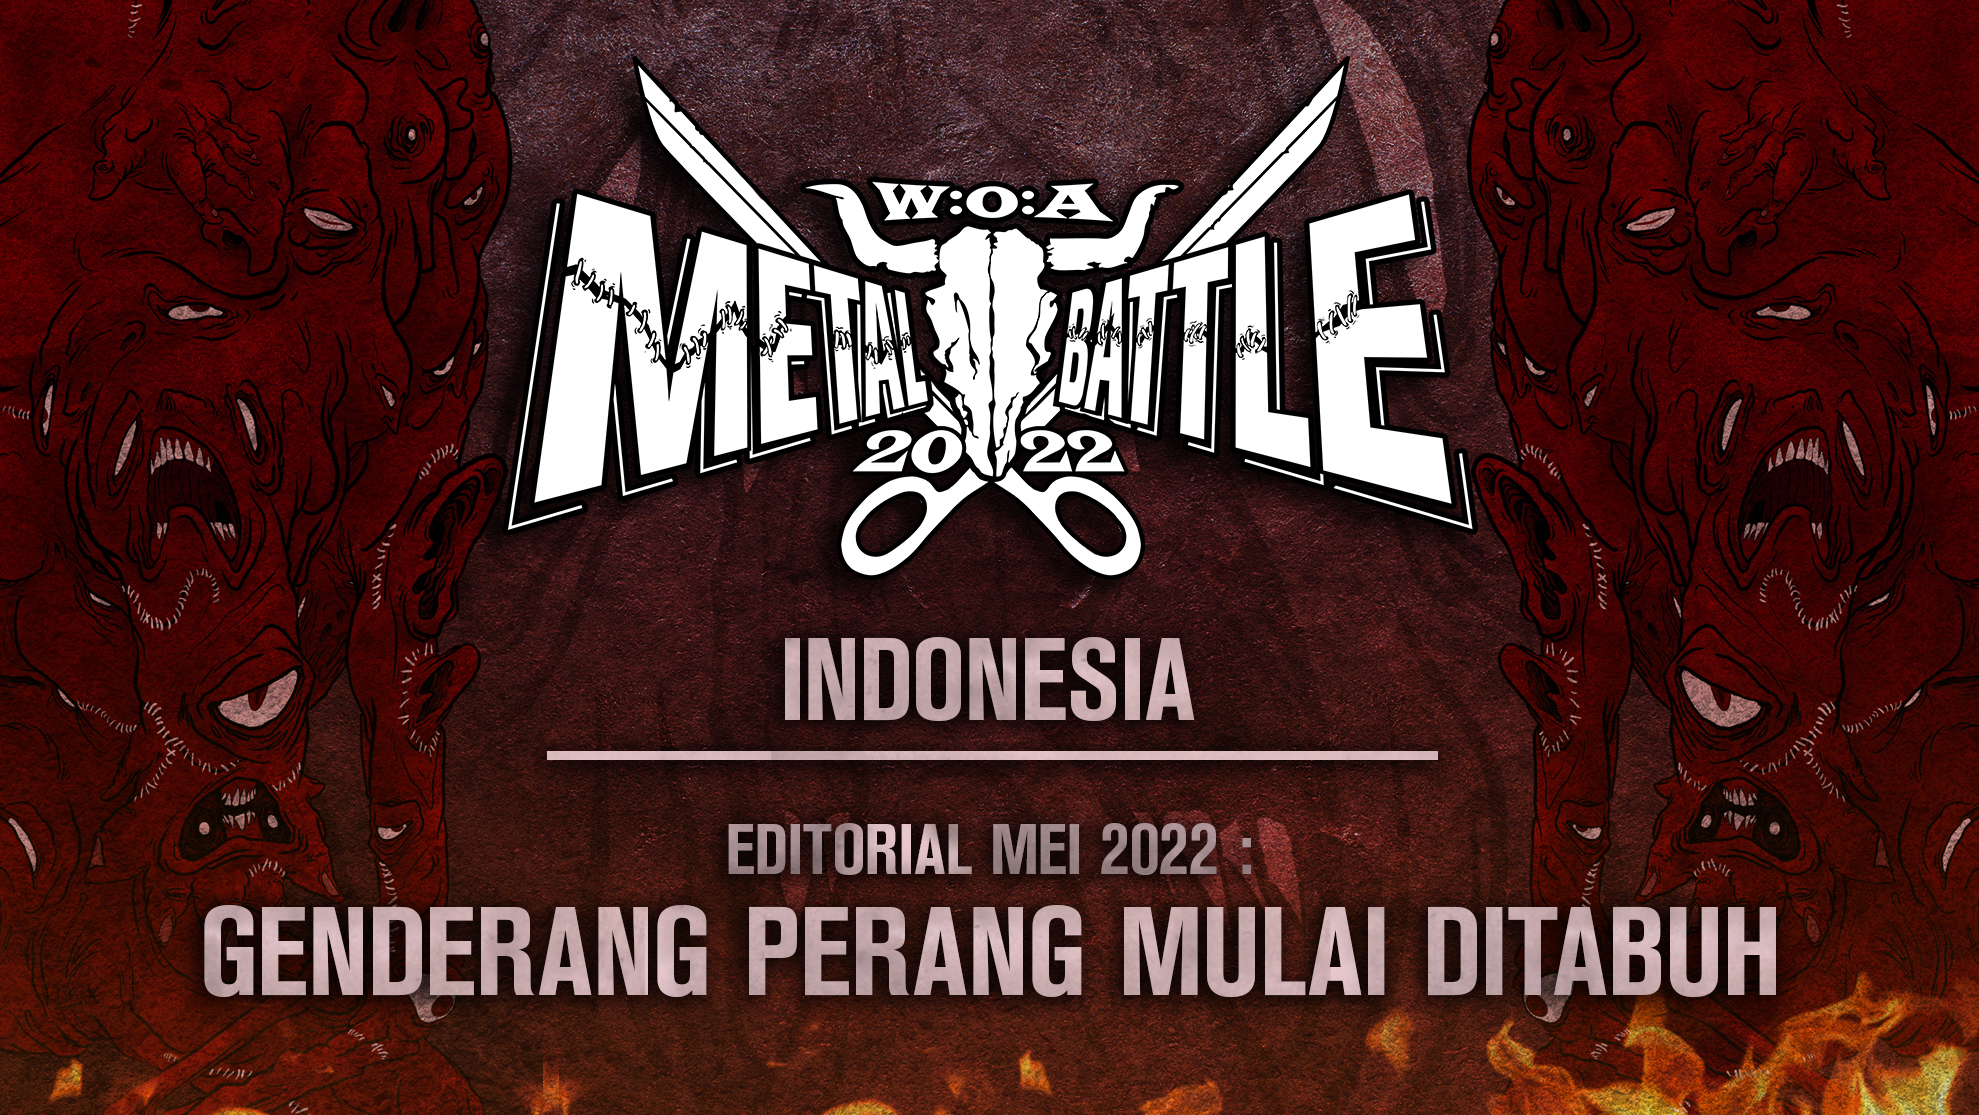 Genderang Perang Mulai Ditabuh di Wacken Metal Battle Indonesia 2022